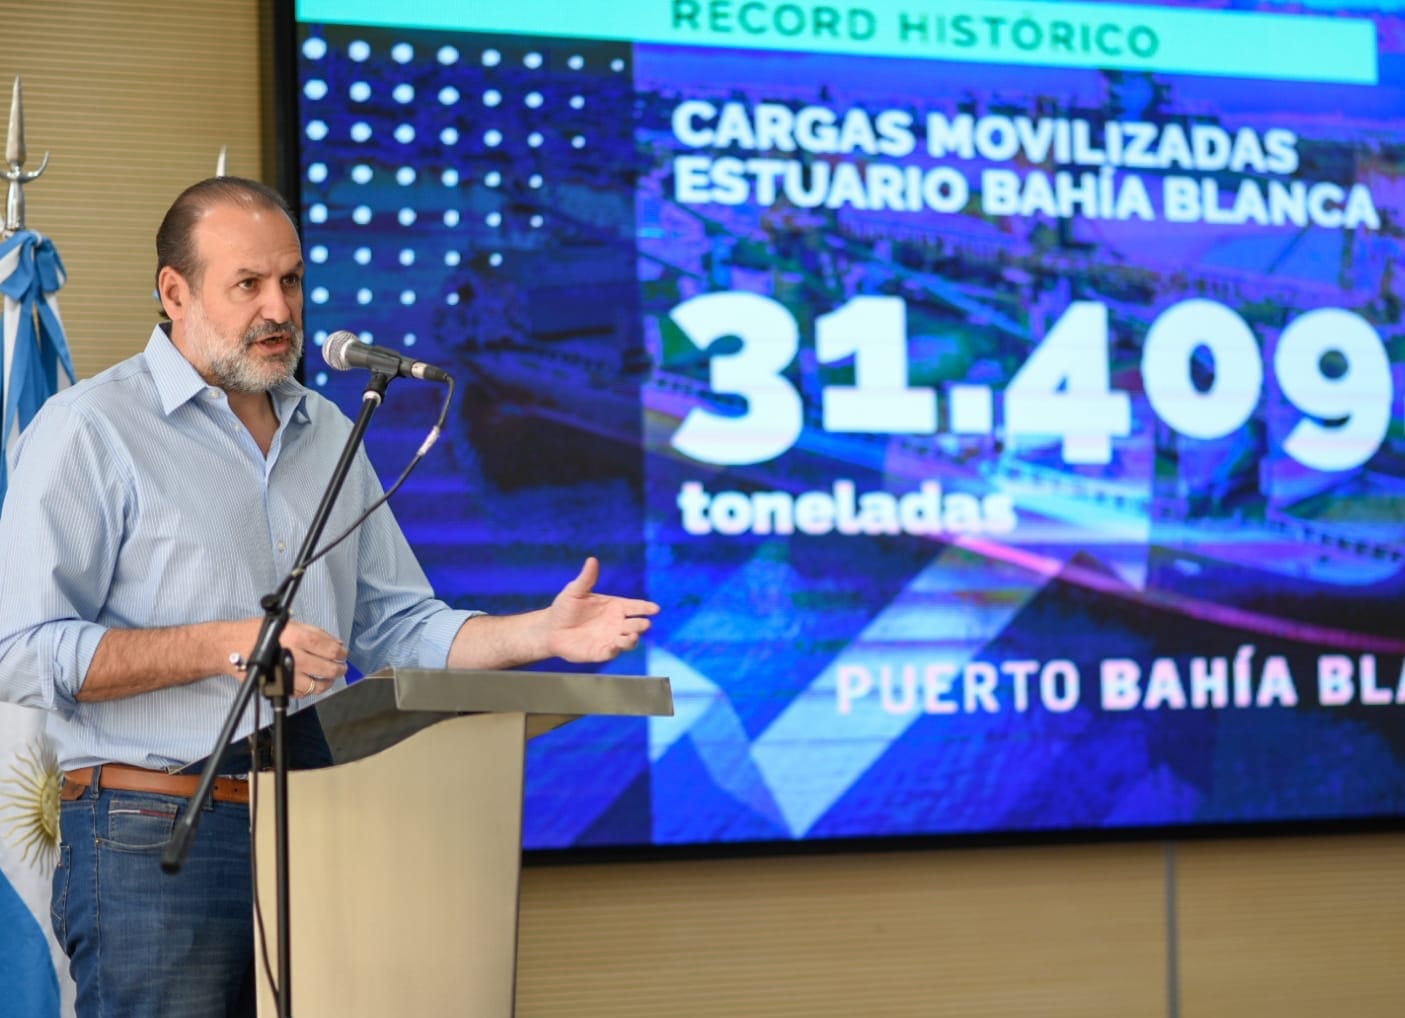 Puerto récord: en Bahía Blanca se movilizaron más de 31 M/T en 2022